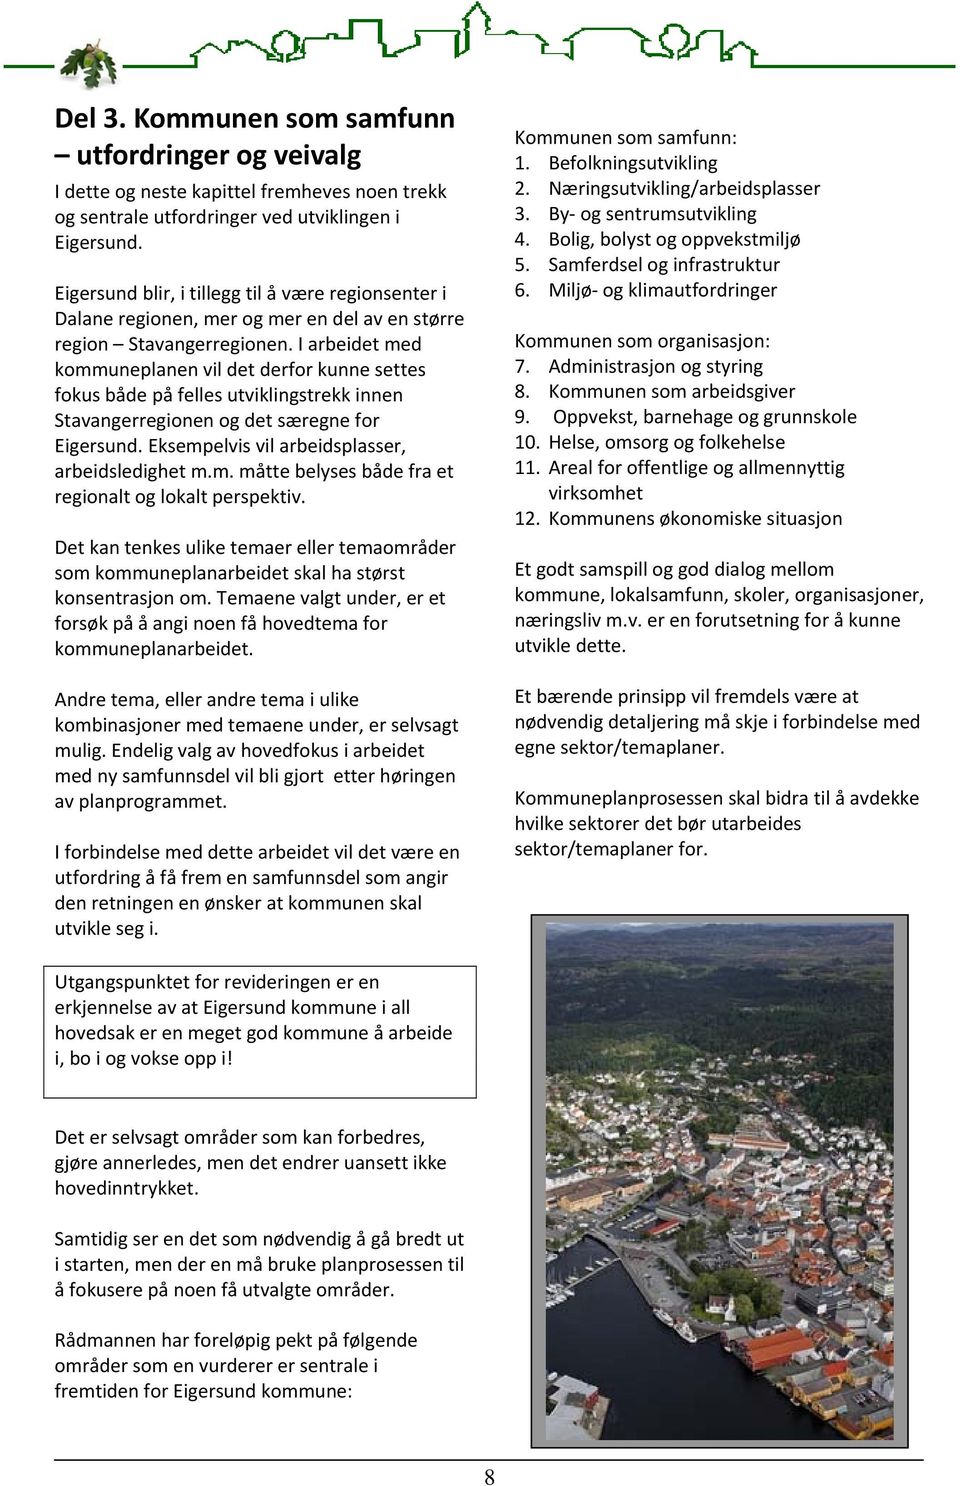 I arbeidet med kommuneplanen vil det derfor kunne settes fokus både på felles utviklingstrekk innen Stavangerregionen og det særegne for Eigersund. Eksempelvis vil arbeidsplasser, arbeidsledighet m.m. måtte belyses både fra et regionalt og lokalt perspektiv.